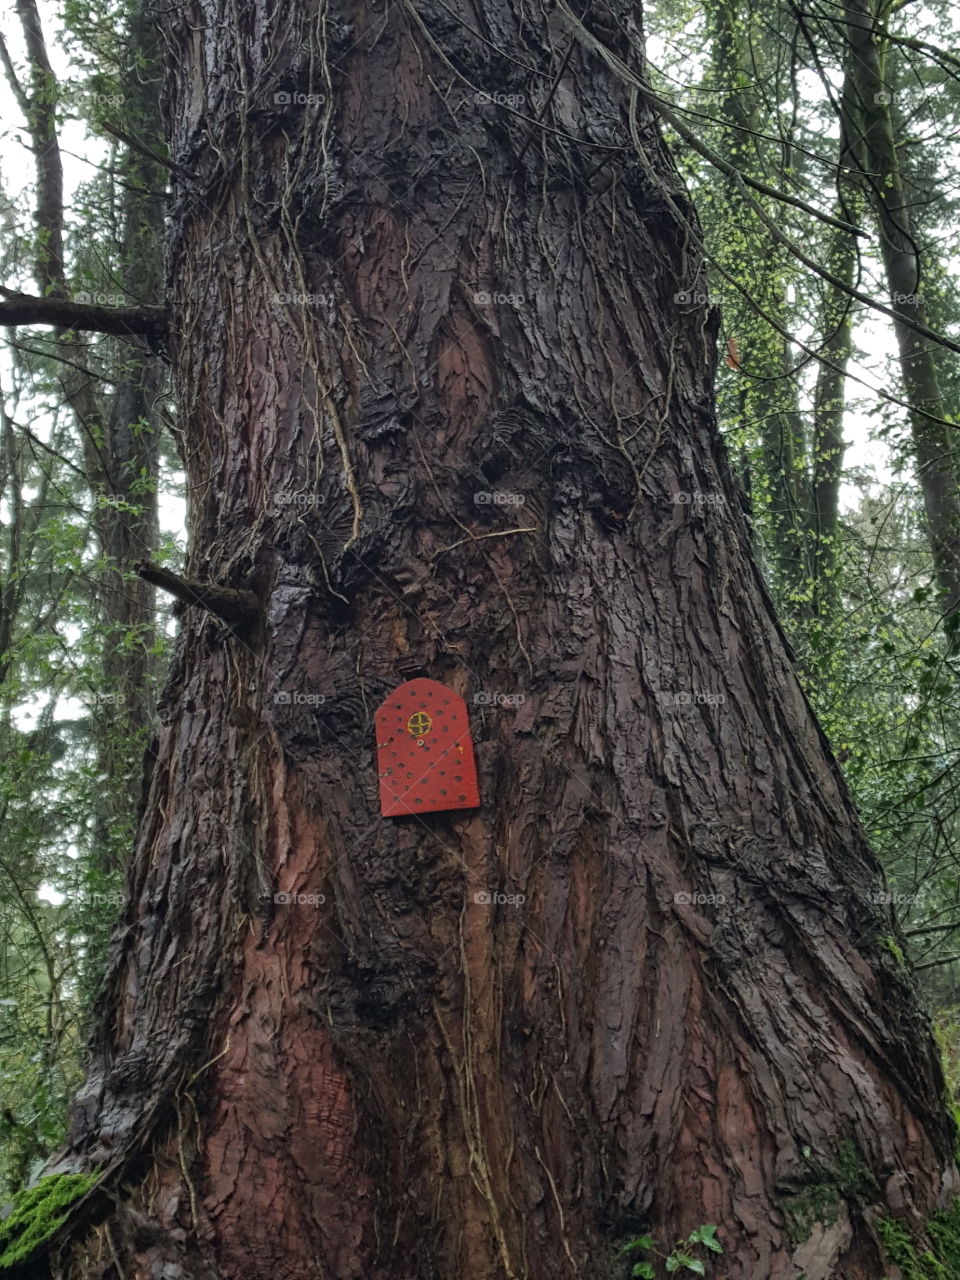 The red door tree